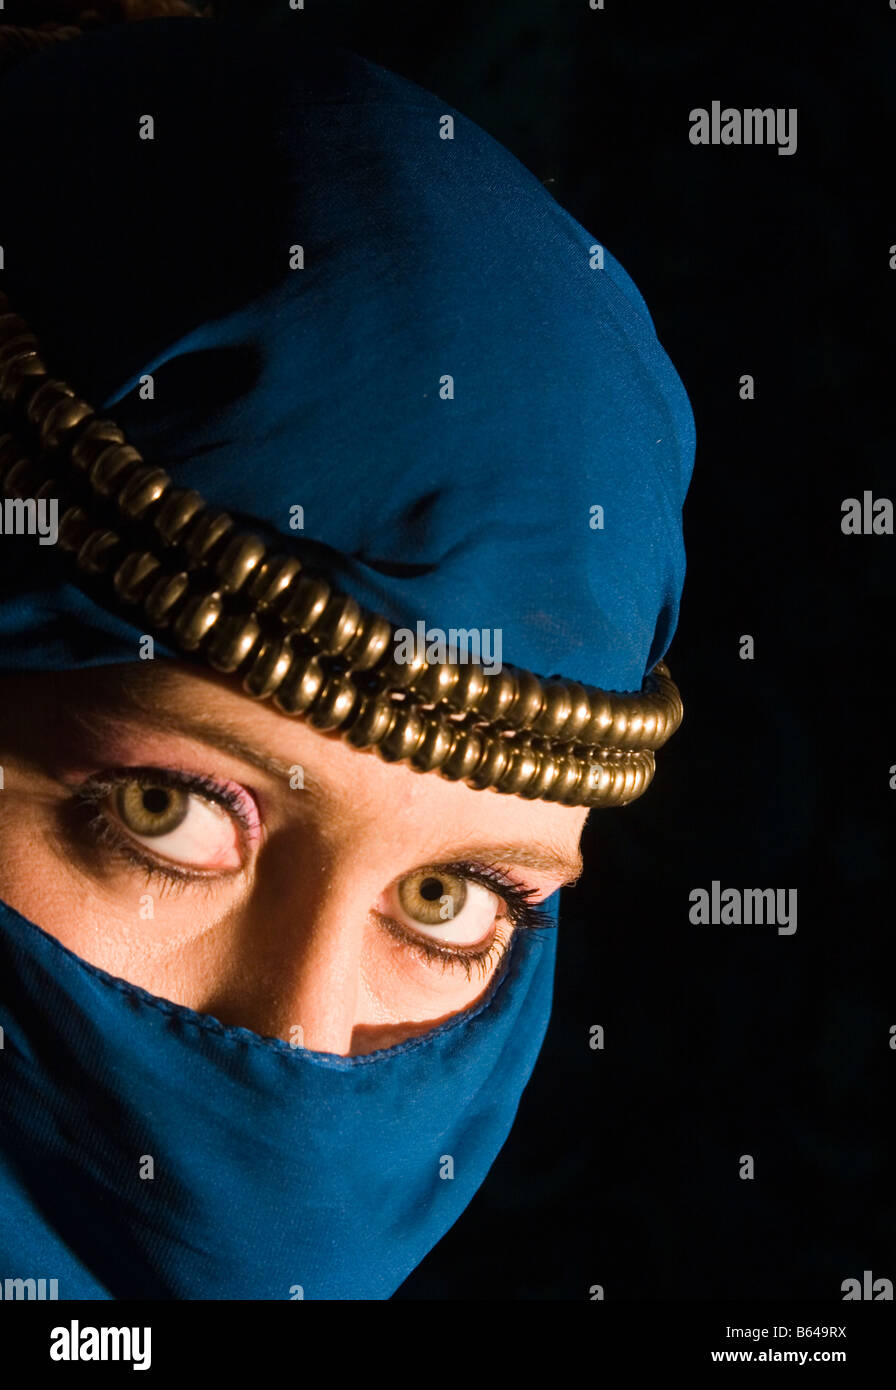 Junge Frau mit dekorativen Headress und Yashmak Art Schleier bedeckte ihr Gesicht Stockfoto